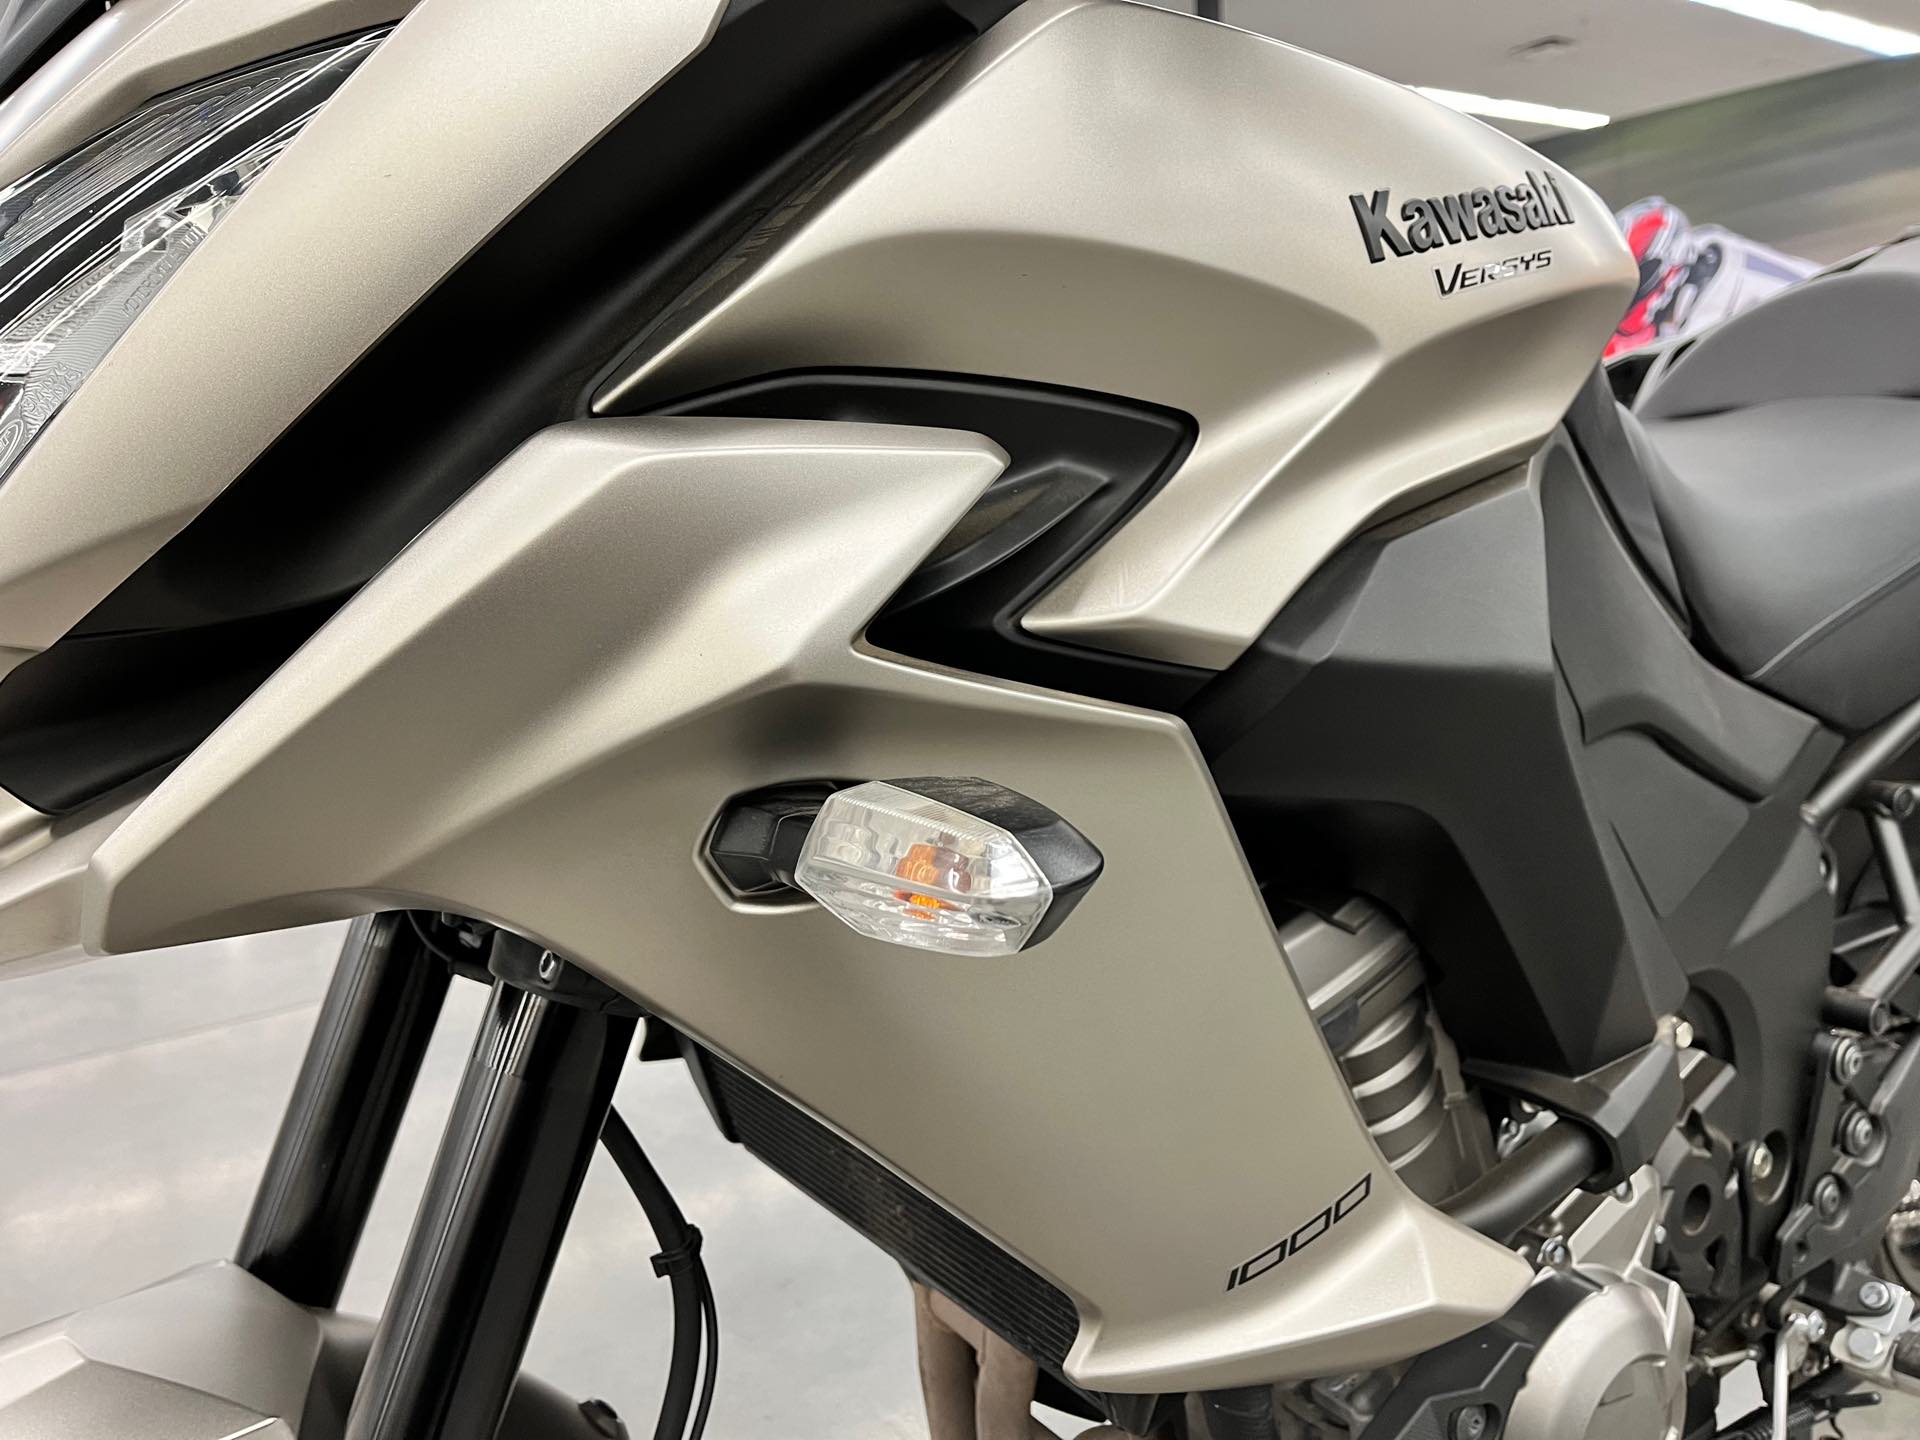 2016 Kawasaki Versys 1000 LT at Aces Motorcycles - Denver